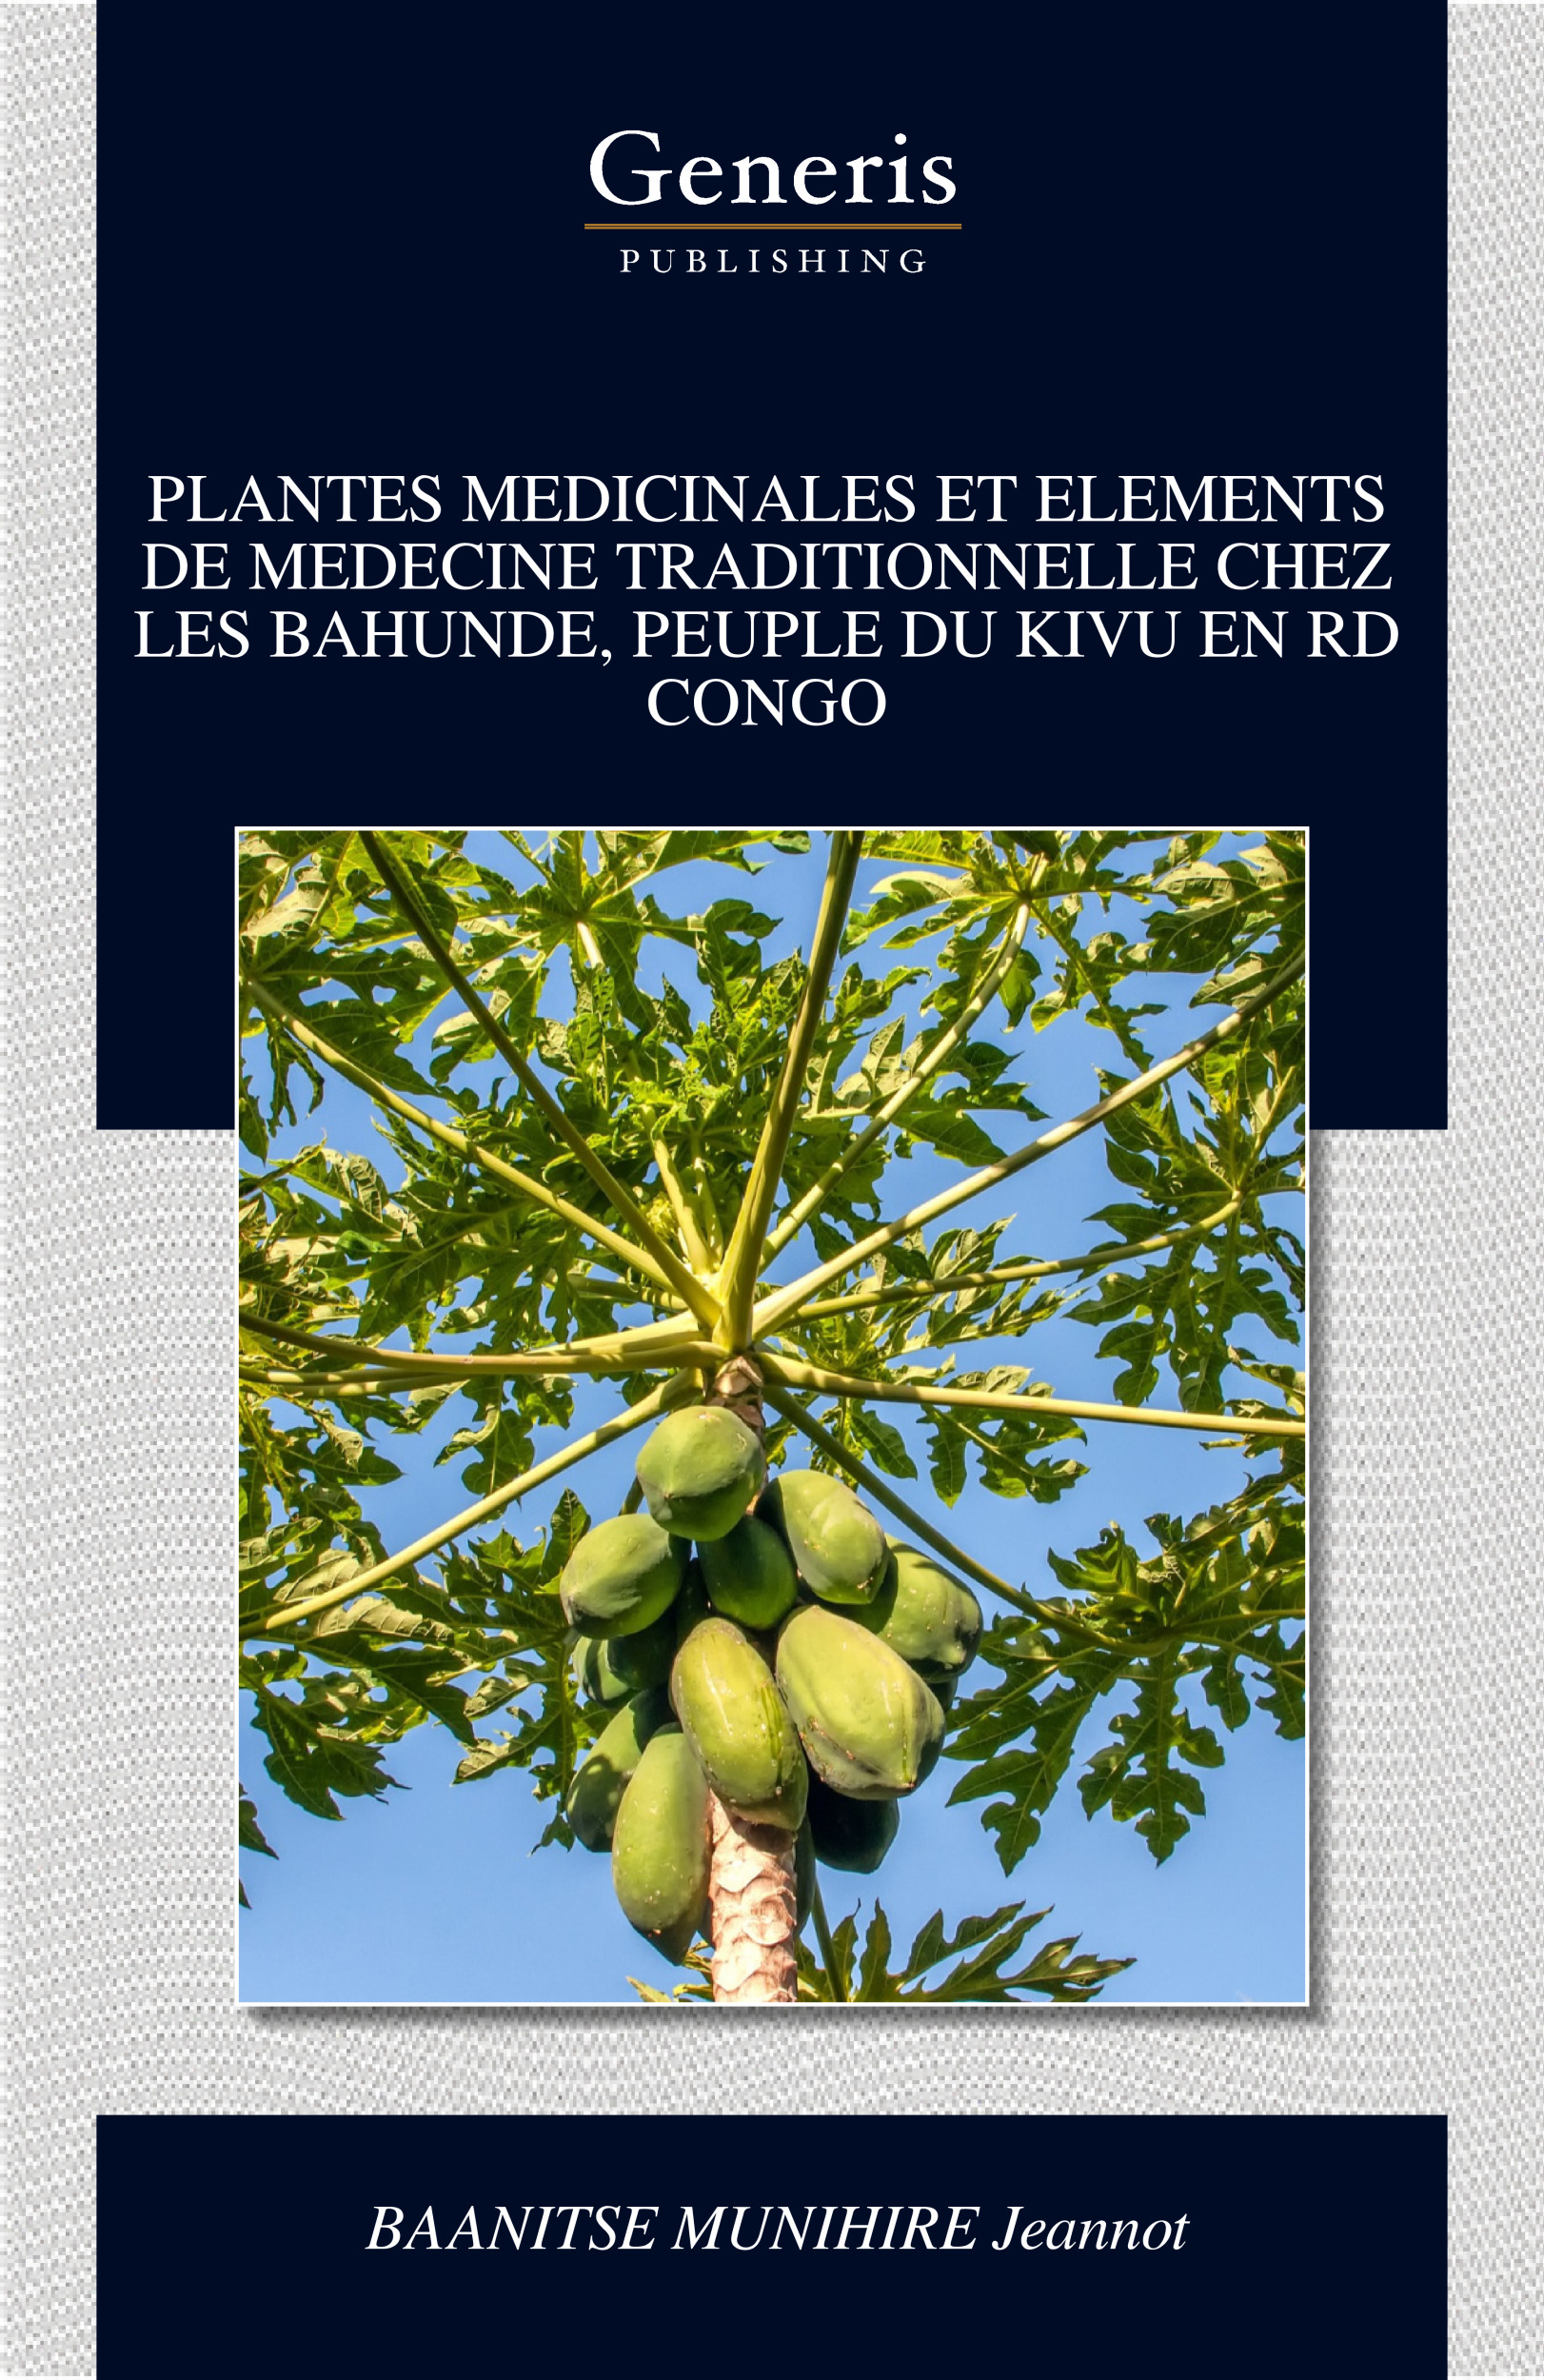 Les Plantes Médicinales en Biodynamie - Livre de Collectif dirigé